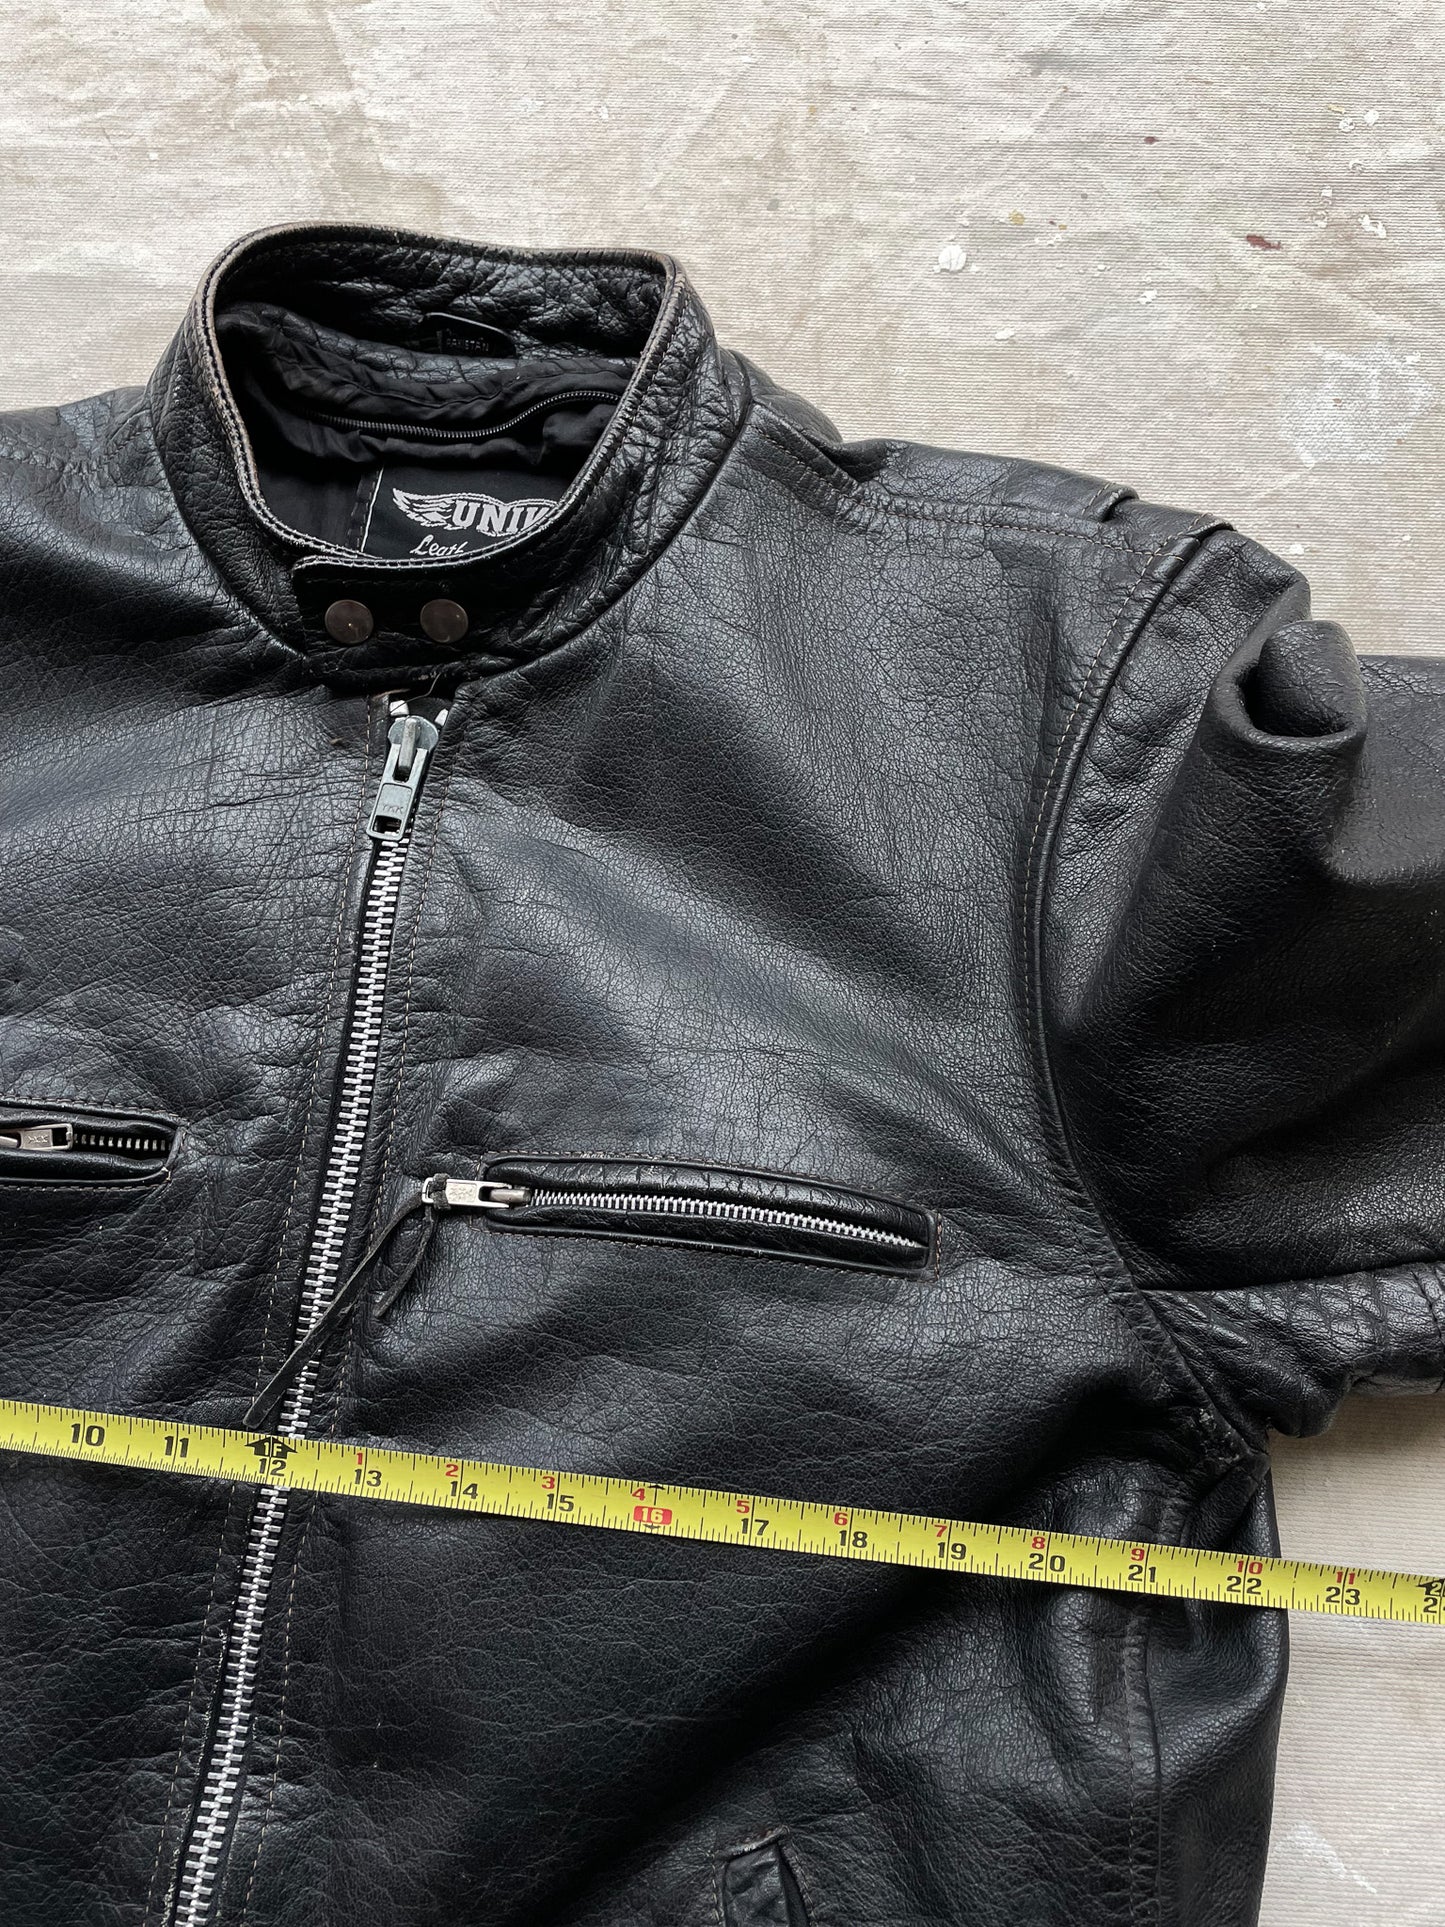 Harley-Davidson Patched Leather Jacket—[L]